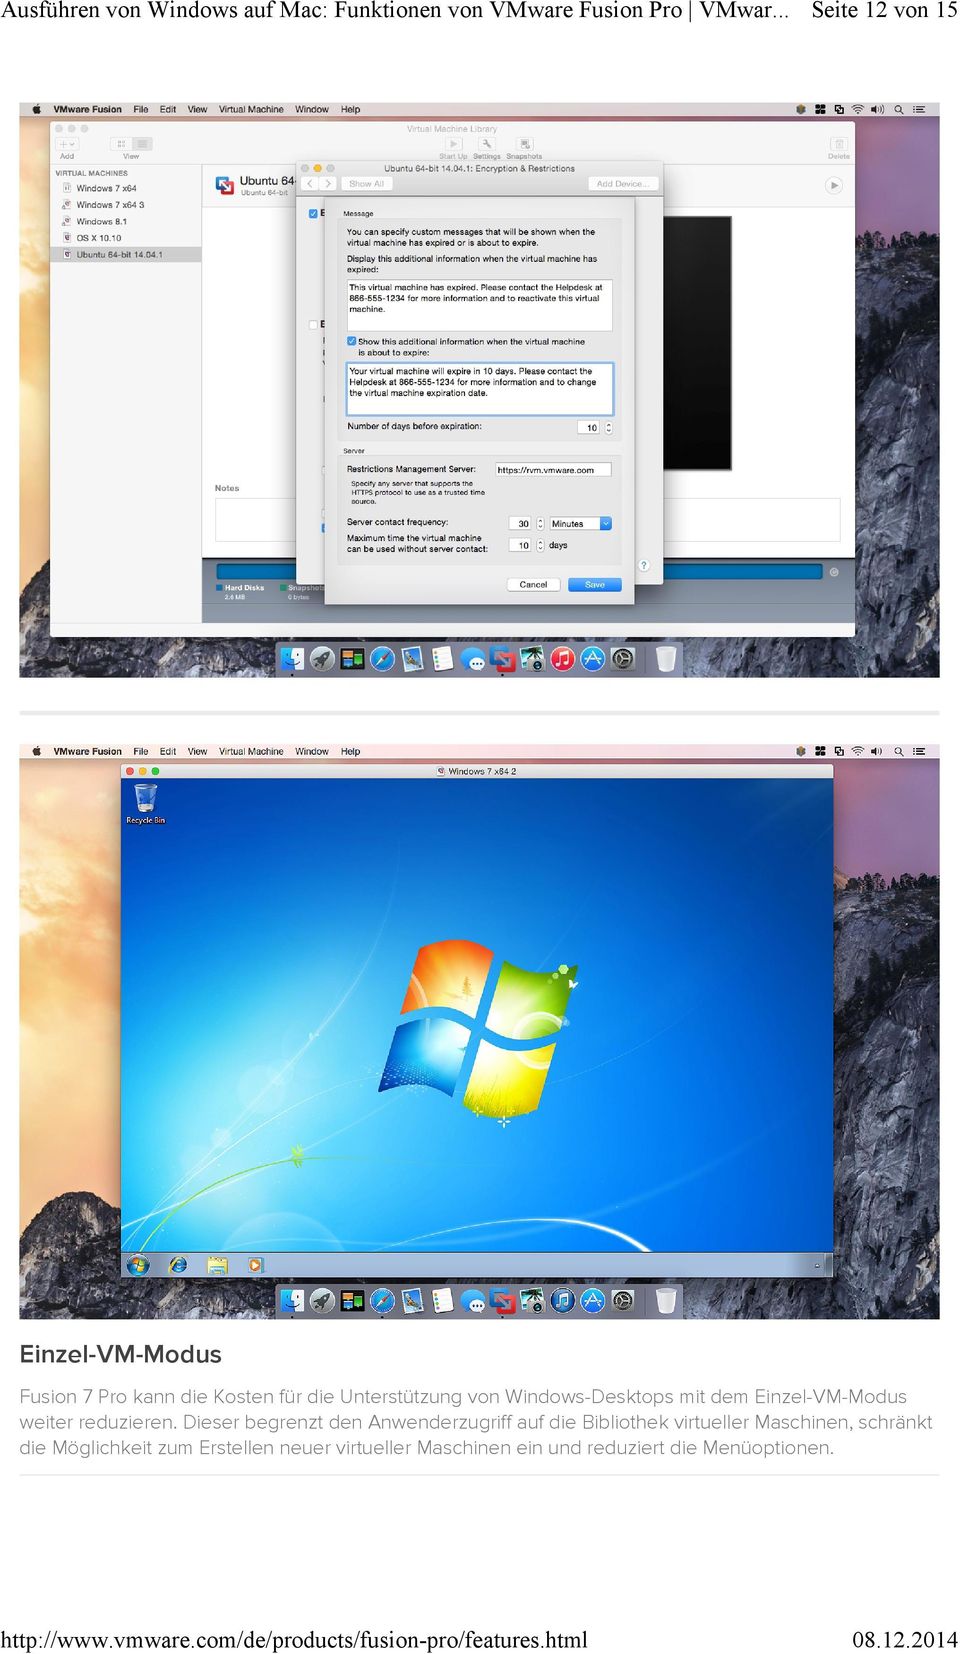 Windows-Desktops mit dem Einzel-VM-Modus weiter reduzieren.